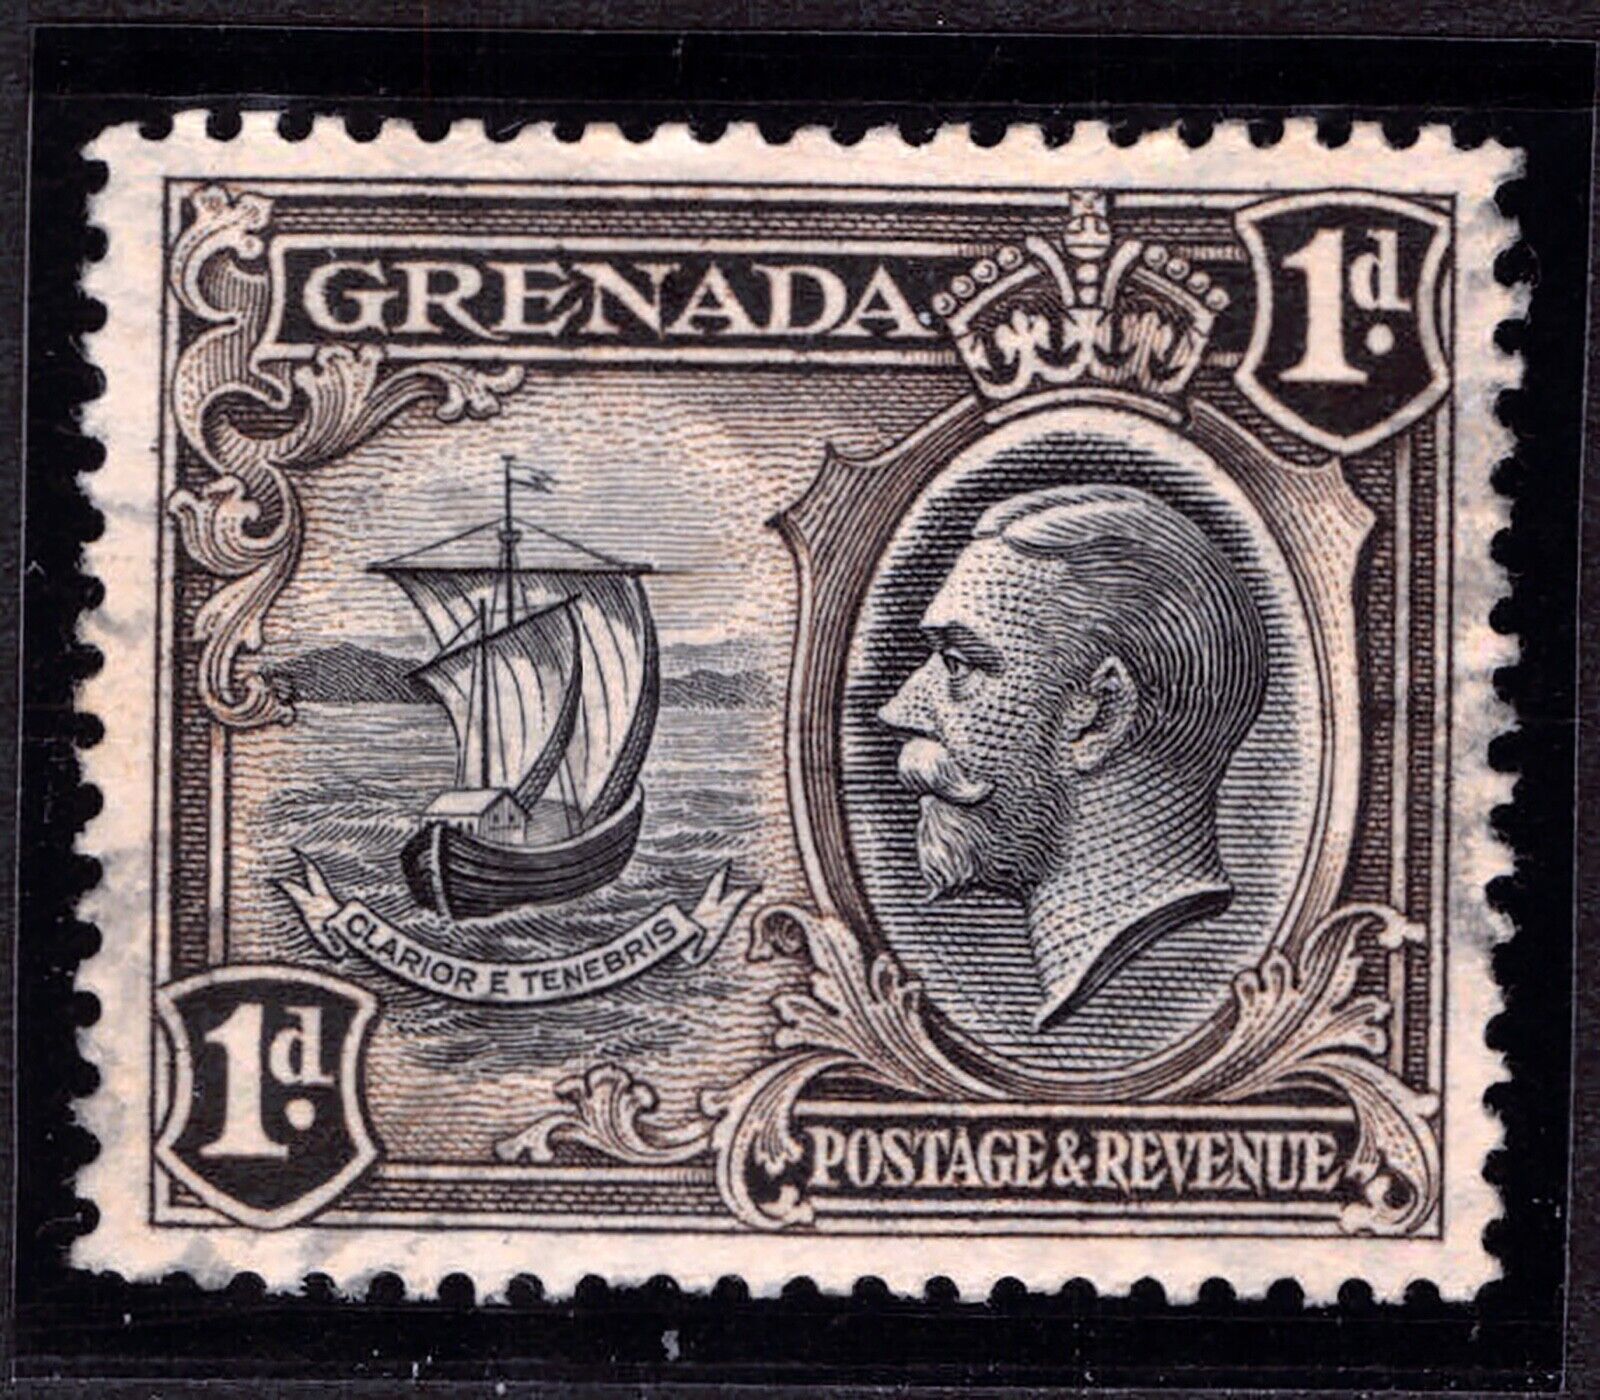 Grenada 1934 Used